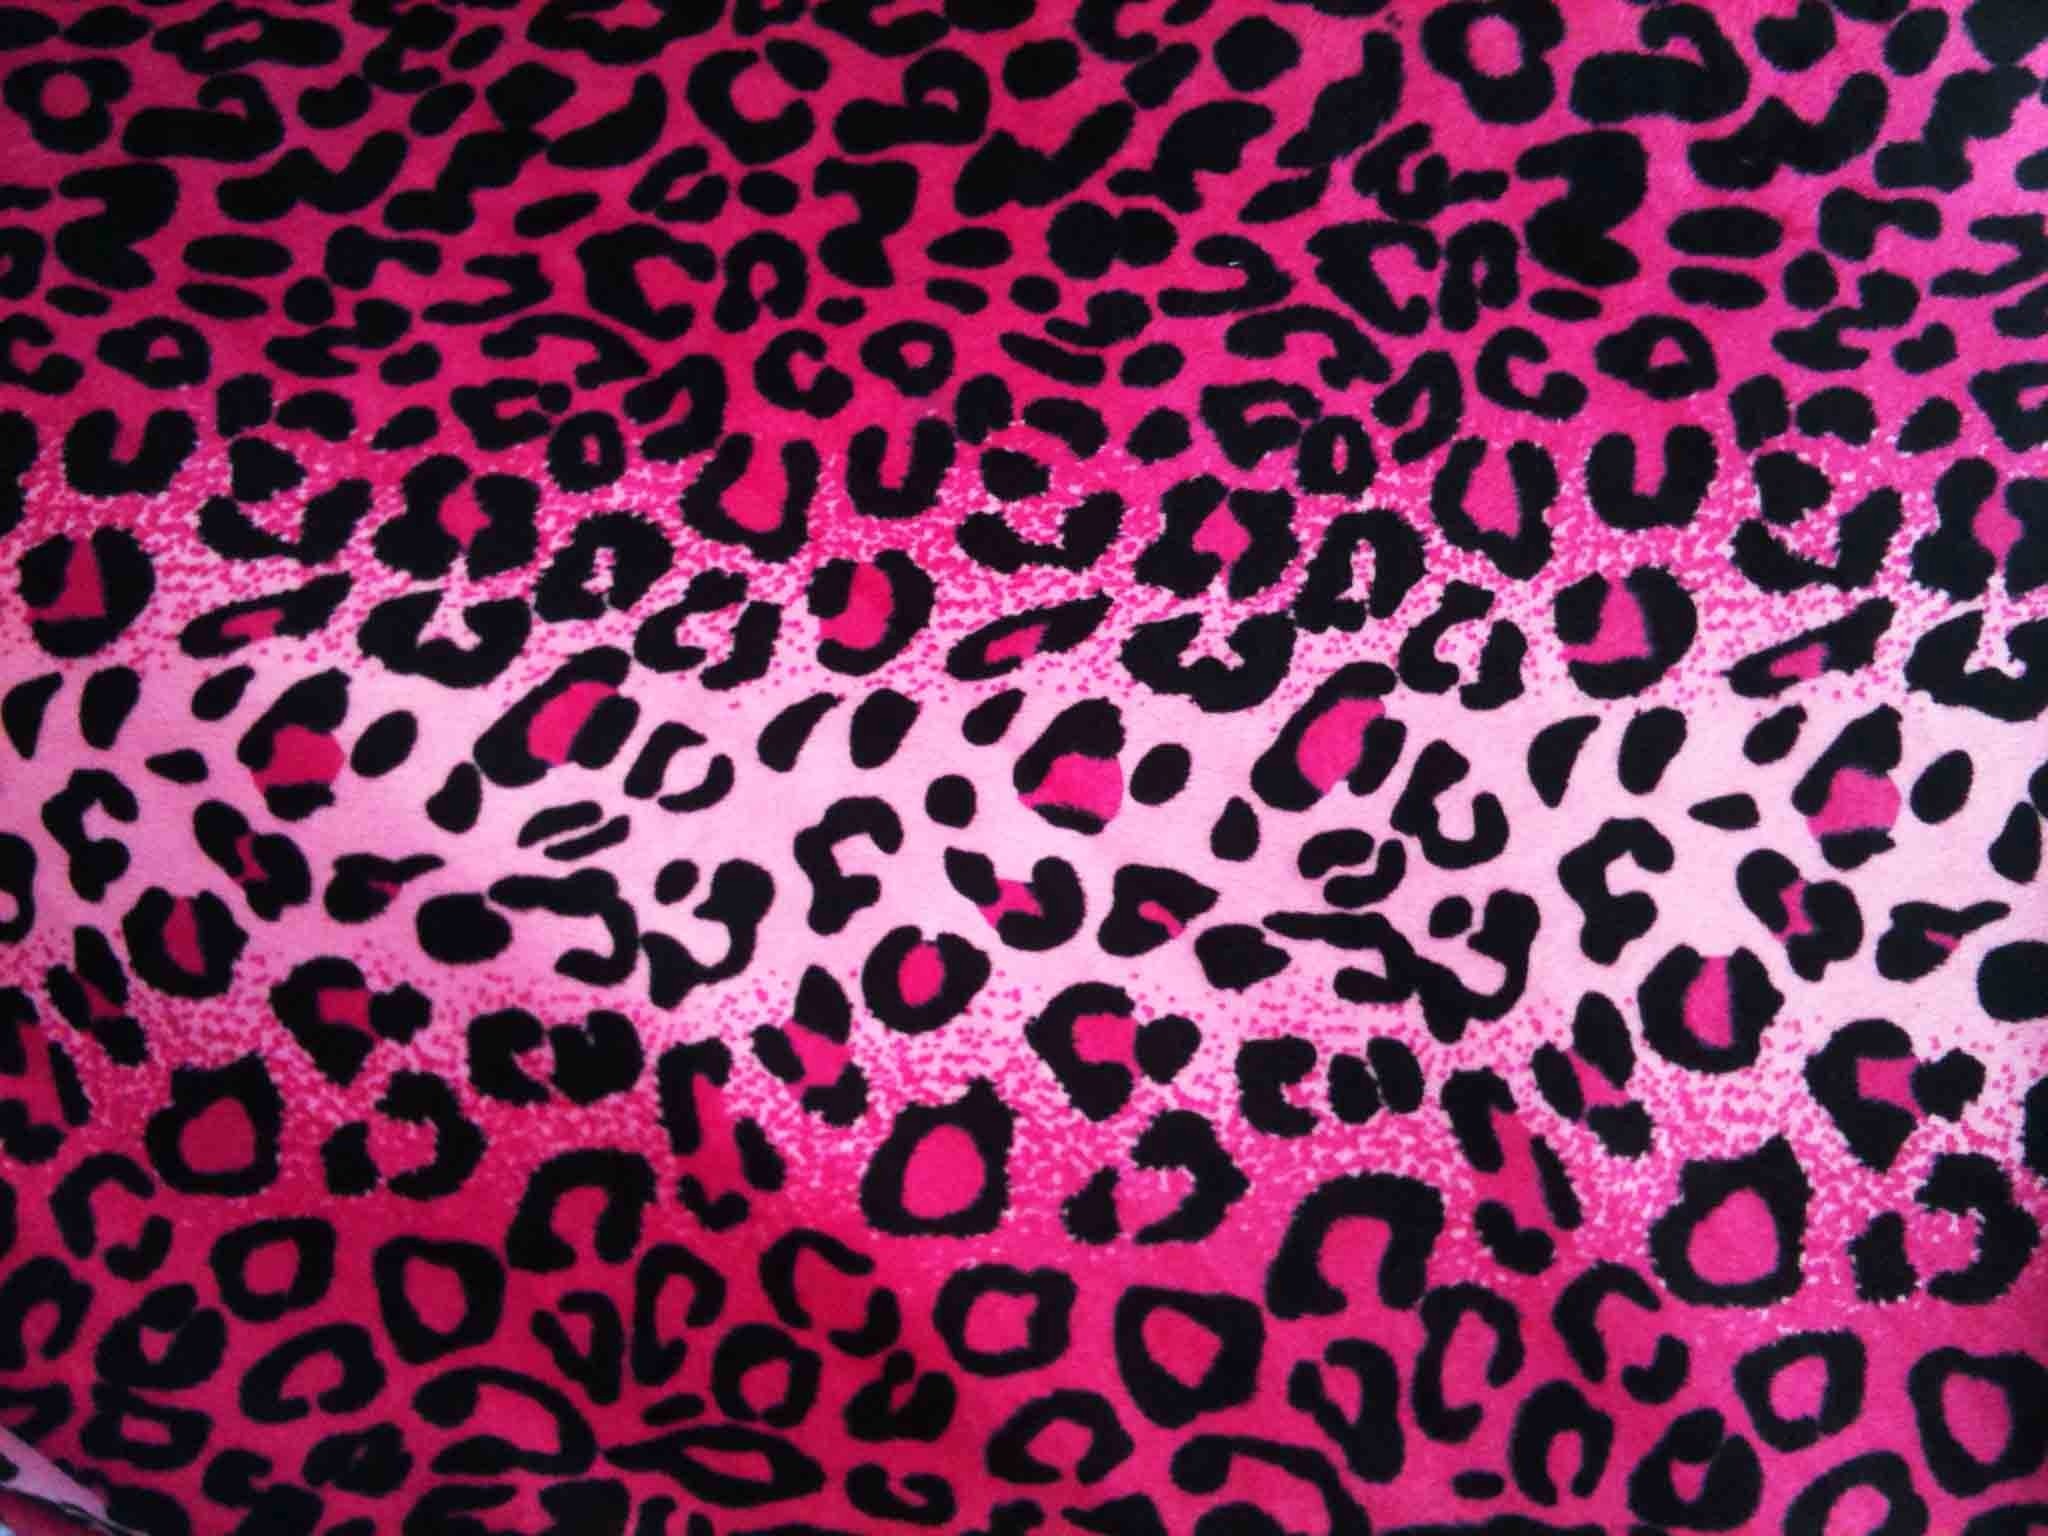 2048x1536 Cheetah Backgrounds wallpaper Pink Cheetah Backgrounds hd wallpaper  